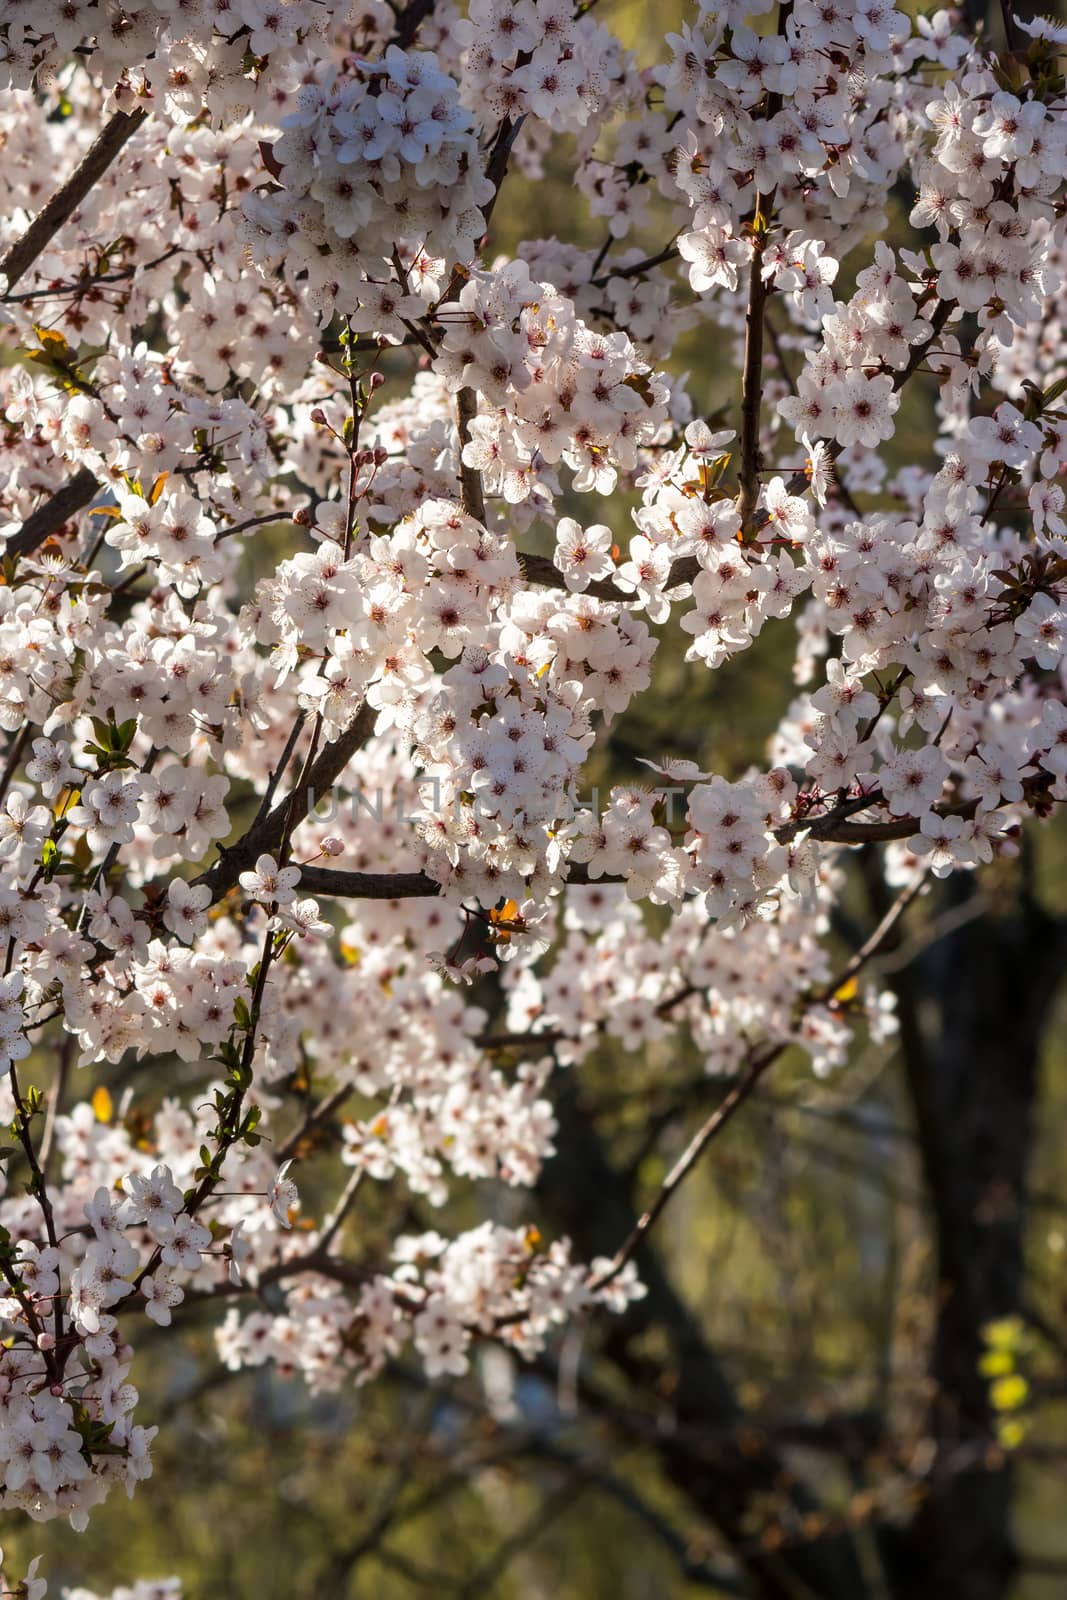 flowers of apple tree in sunlight by Pellinni